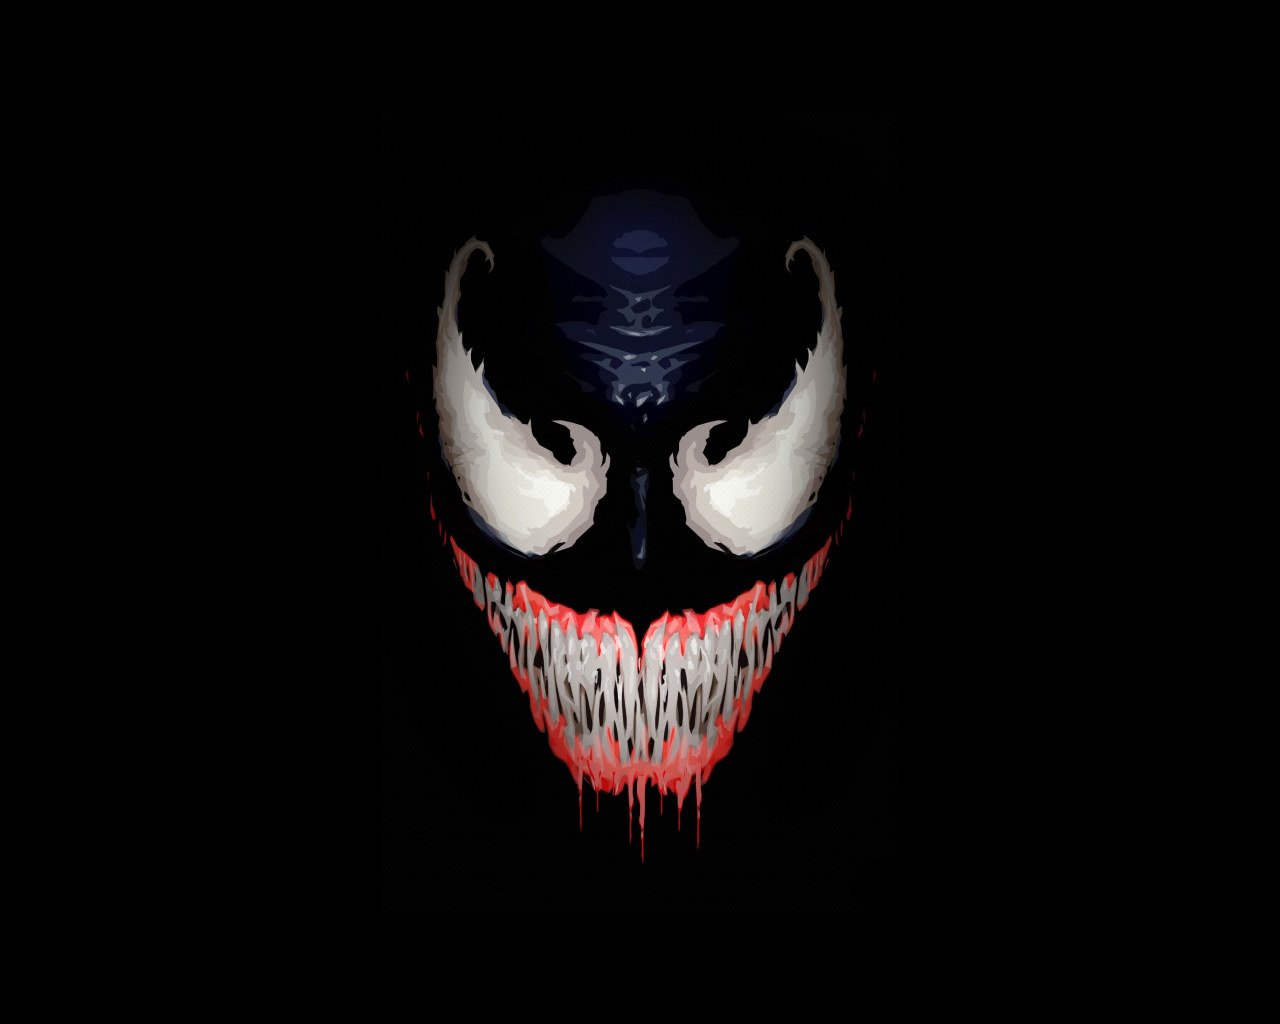 Wallpaper Venom Movie, Hd, 4k, 5k, Artwork, Supervillain • Wallpaper For You HD Wallpaper For Desktop & Mobile